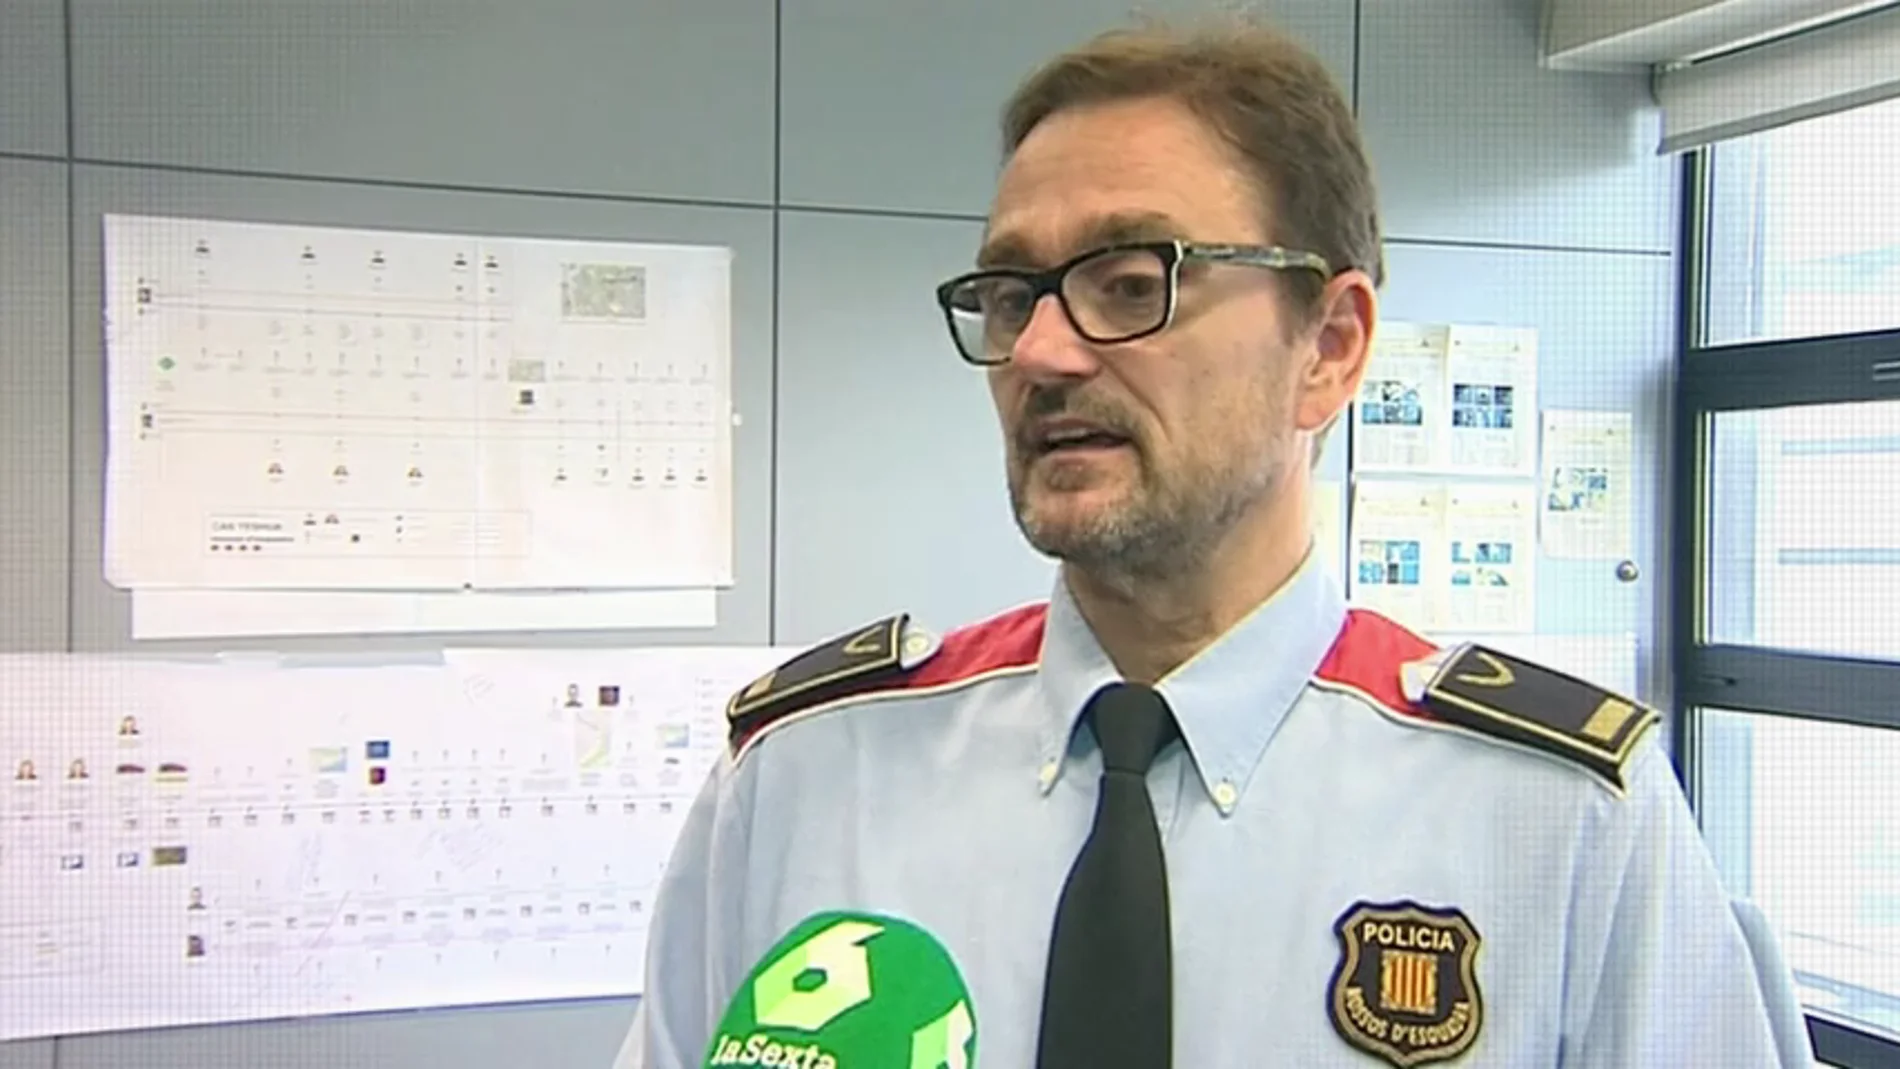 El inspector jefe Jordi Domènech, sobre Caroline del Valle: "Tenemos bastante información sobre lo que pudo pasar"